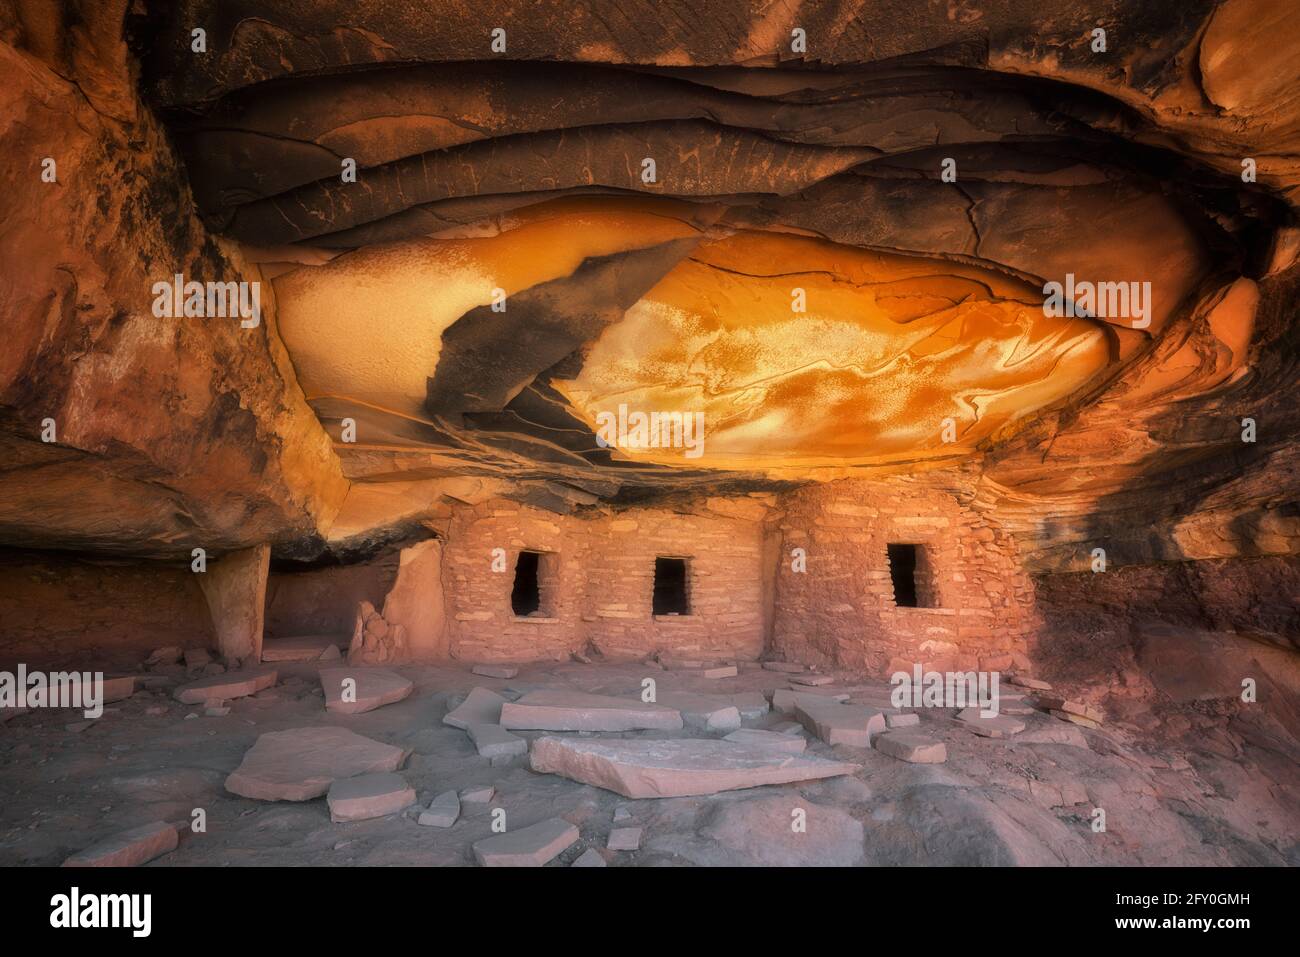 La lumière du soleil réfléchissante illumine le plafond de cet ancien grenier Anasazi et porte le nom de « Falling Roof Ruin dans le plateau de Cedar Mesa, dans l'Utah du Sud-est. Banque D'Images